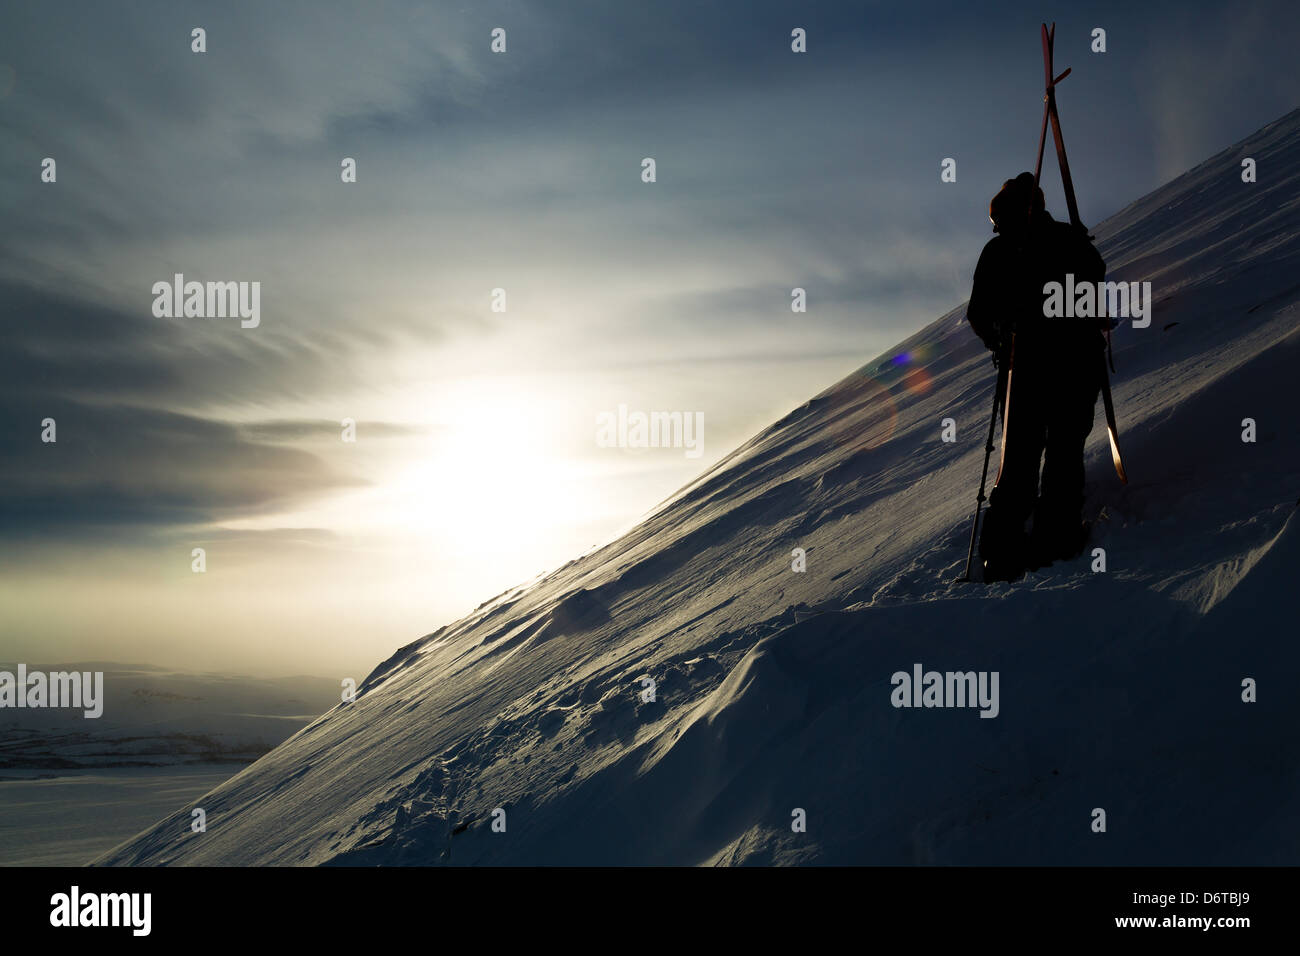 Una montaña de sol imagen, esquiador o alpinista mirar lejos de la cámara. Imagen oscura con un fuerte contraste. Foto de stock